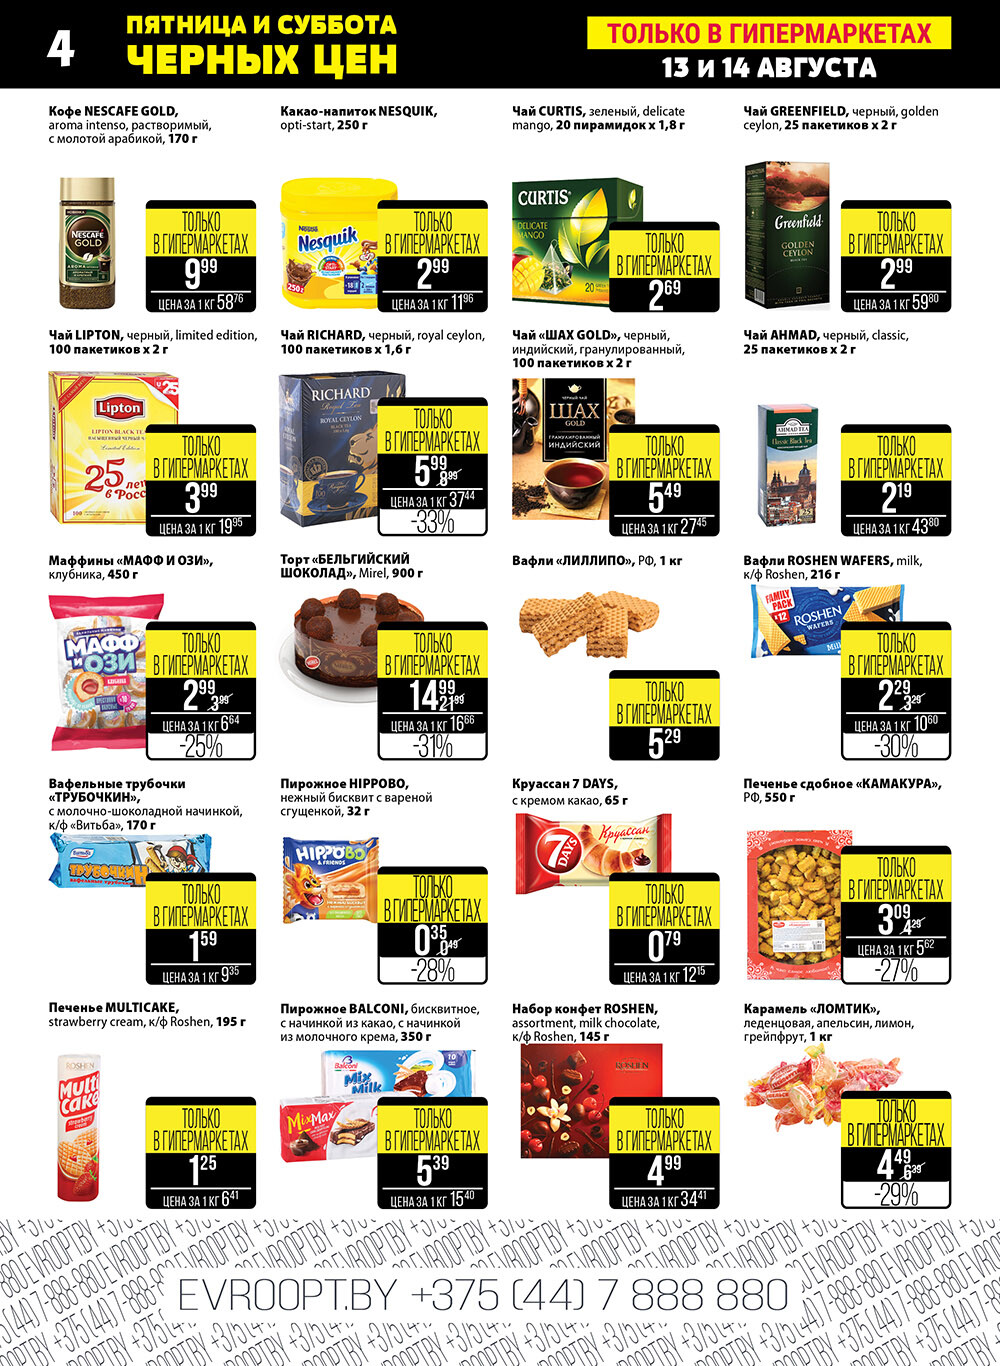 Каталог (листовка) акции "Пятница и суббота черных цен" гипермаркет Евроопт с 13 по 14 августа 2021 года